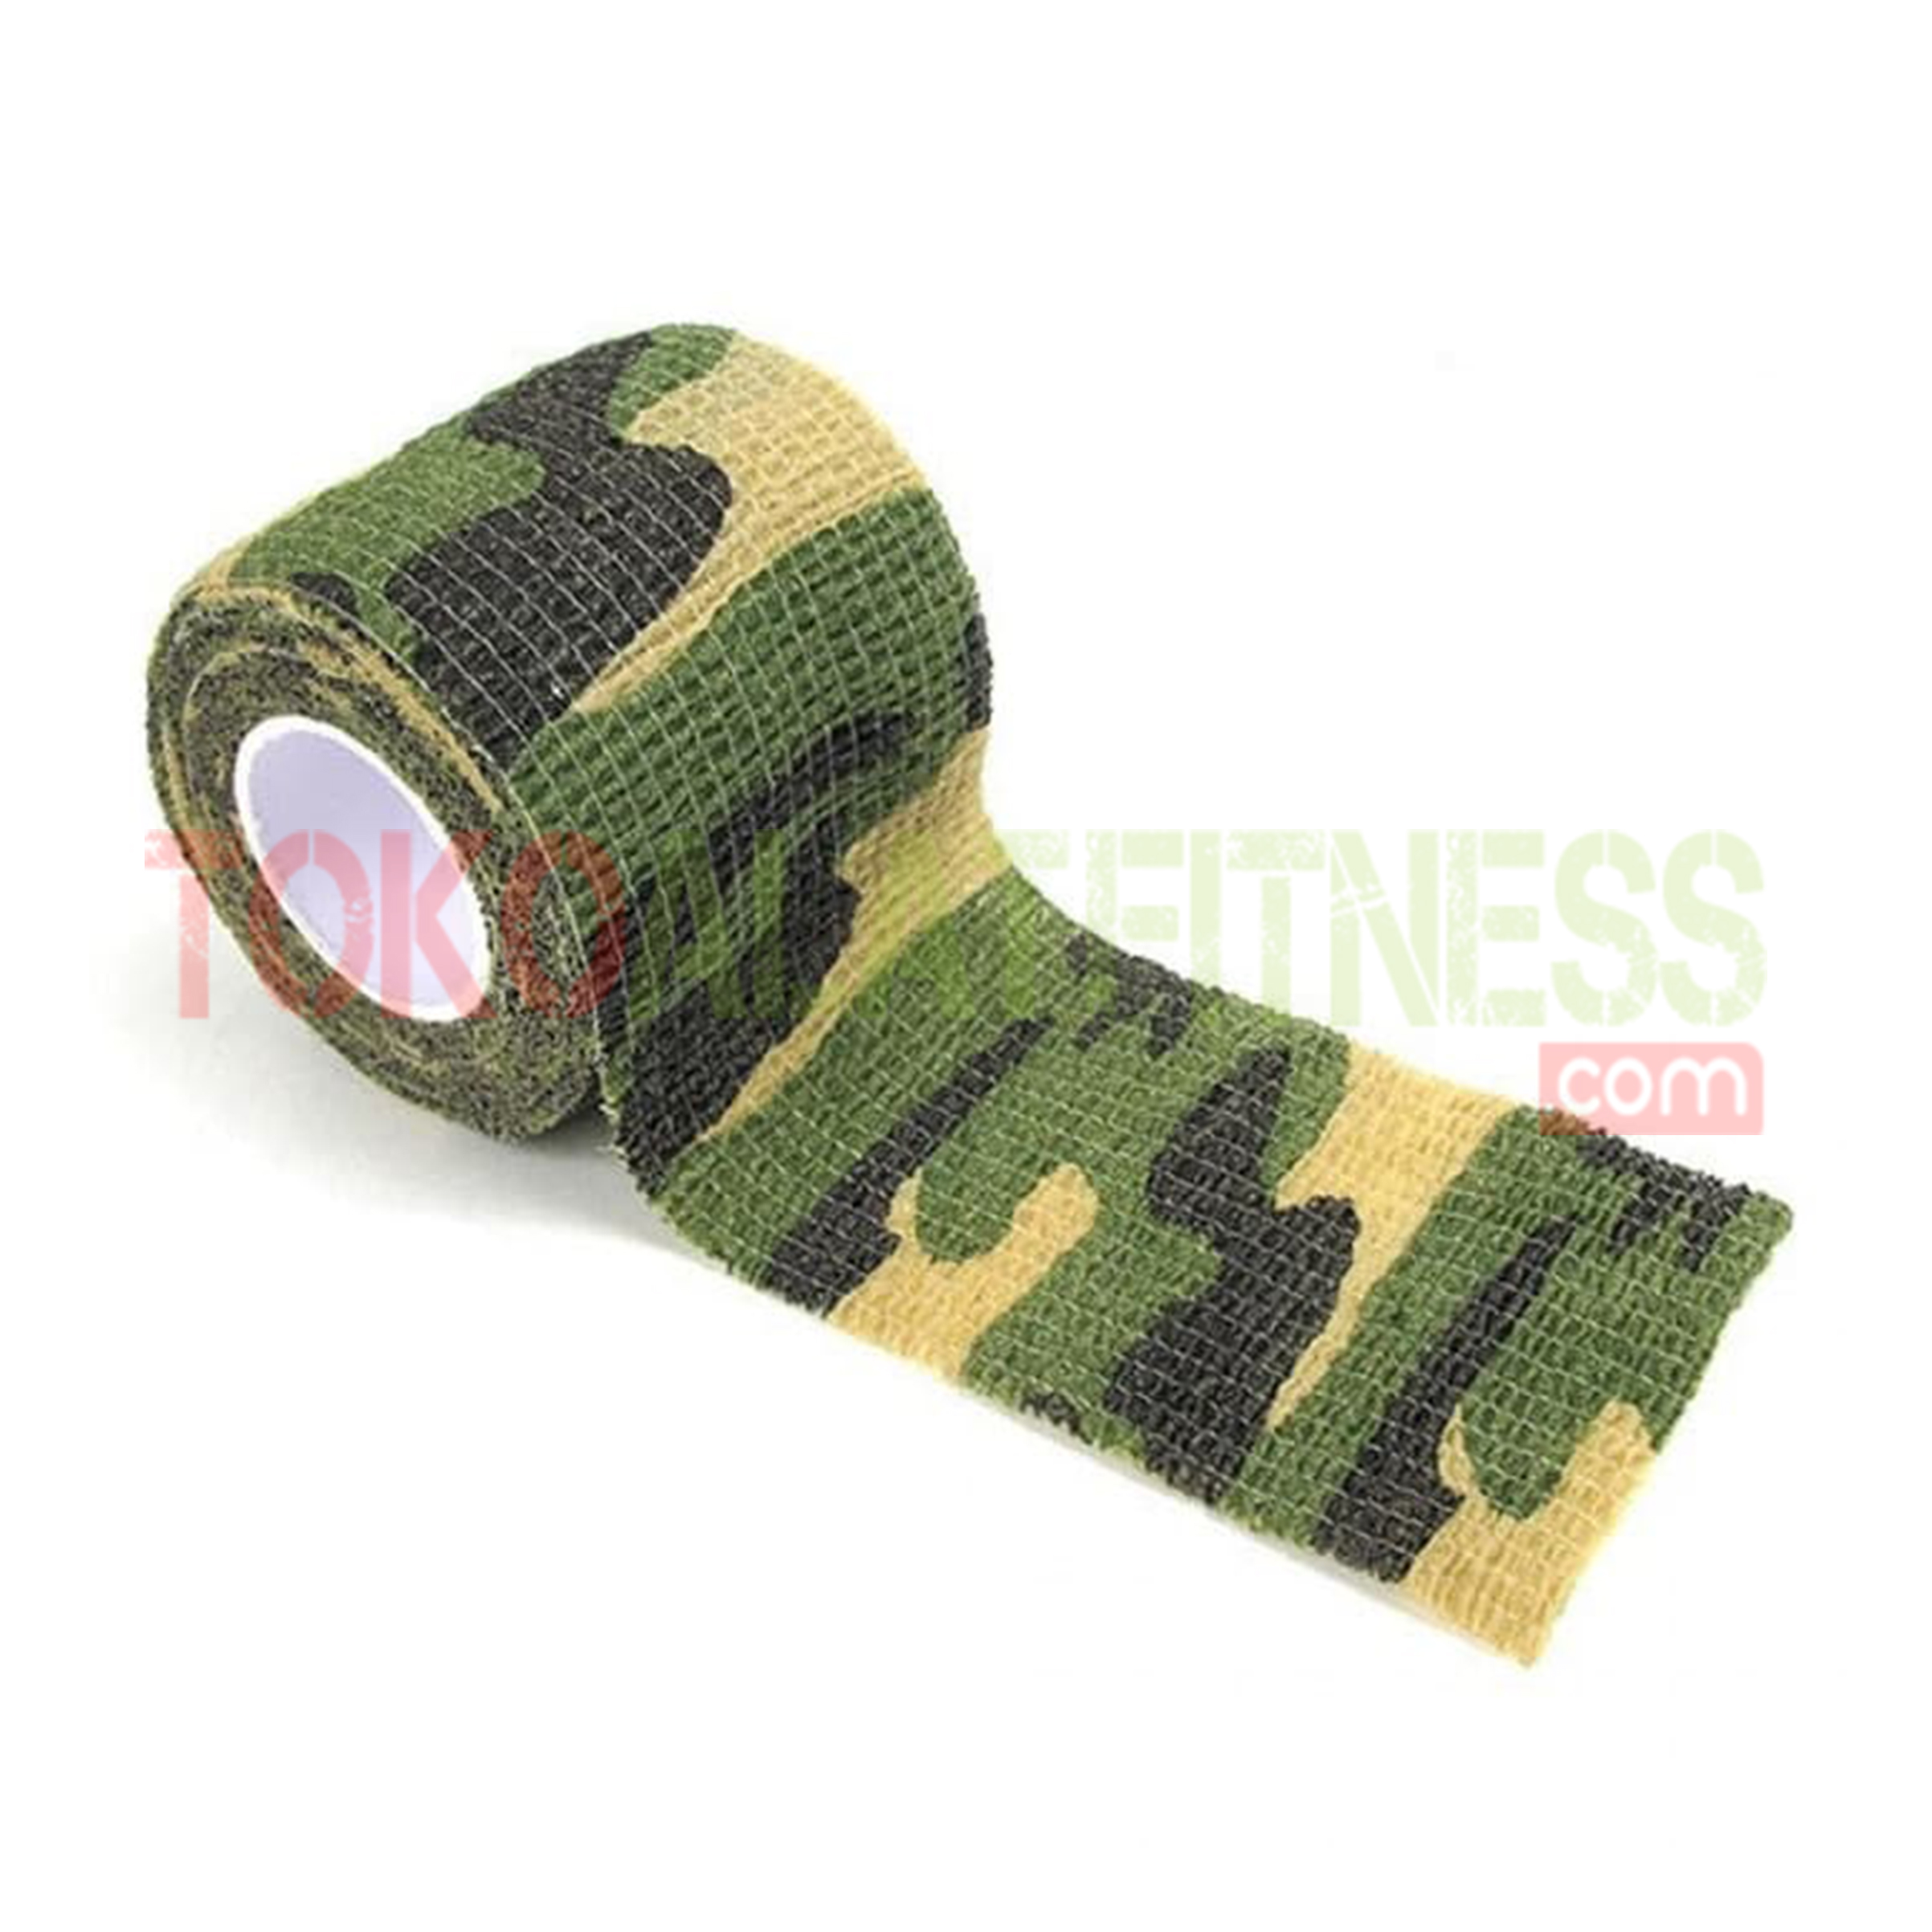 Camo Tape Army 2 wtm - Roll Cotton Elastic Tape Hijau Army Body Gym